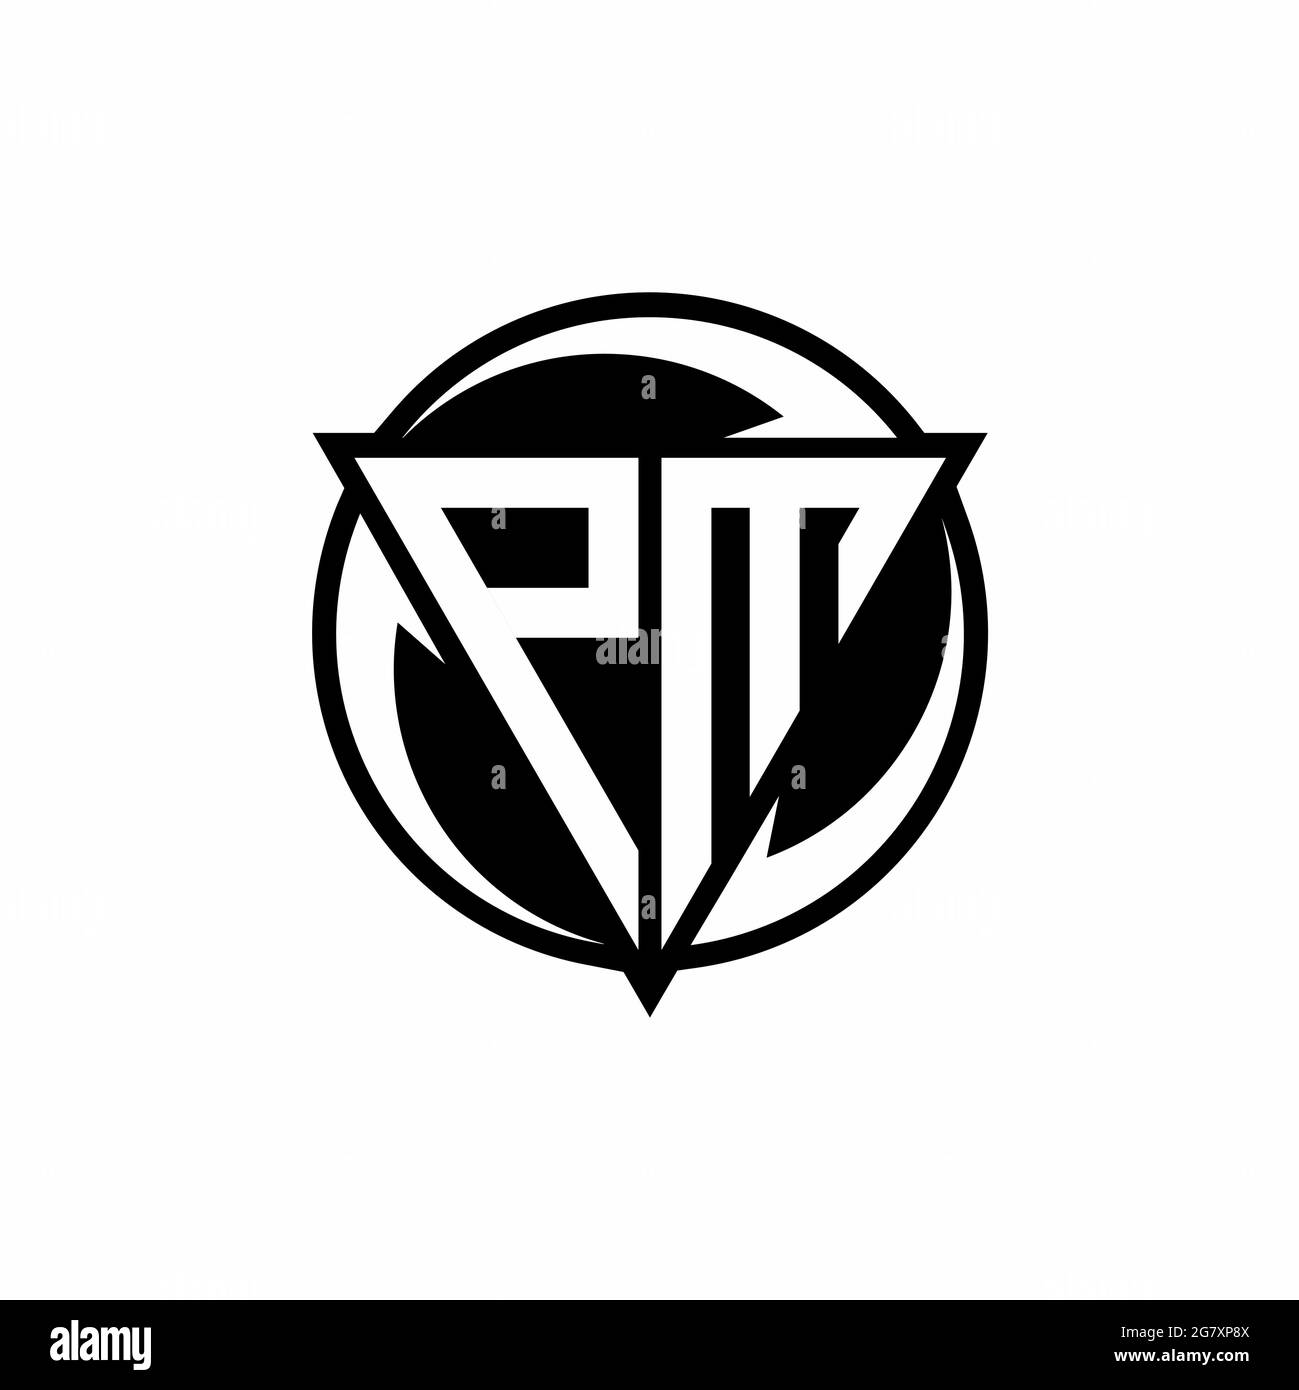 Logo Design Symbols Vector PNG Images, Letter Pm Logo Design Symbol Vector  Illustration Template, Pm, Letter, Black PNG Image For Free Download